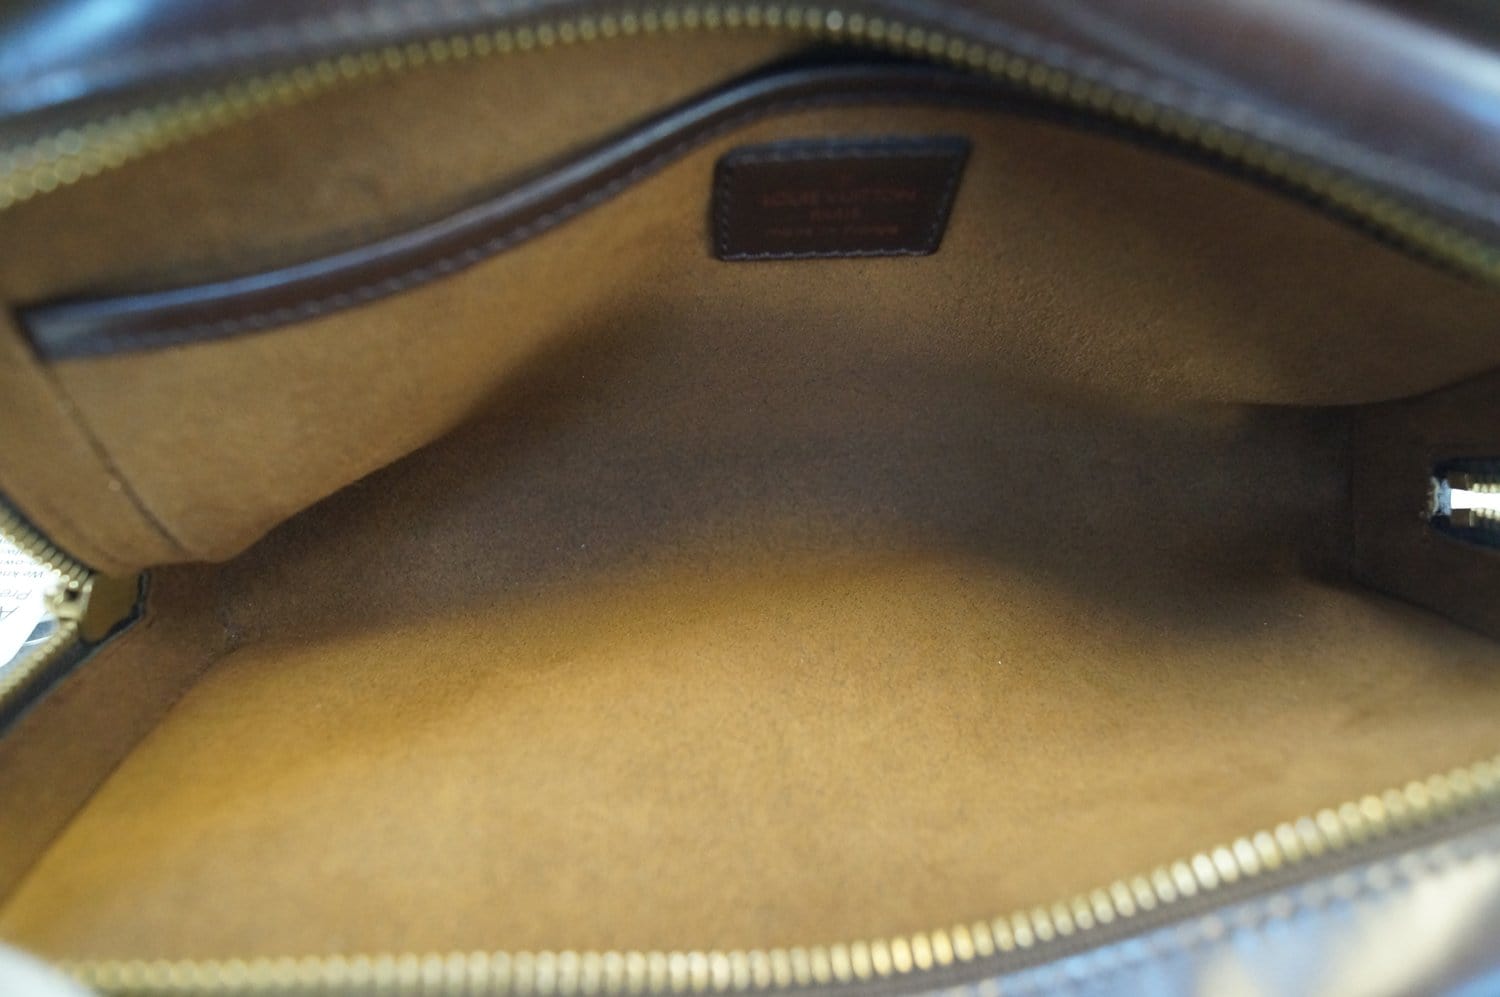 Authentic Louis Vuitton Saint Louis Damier Ebene Leather Clutch Bag Purse